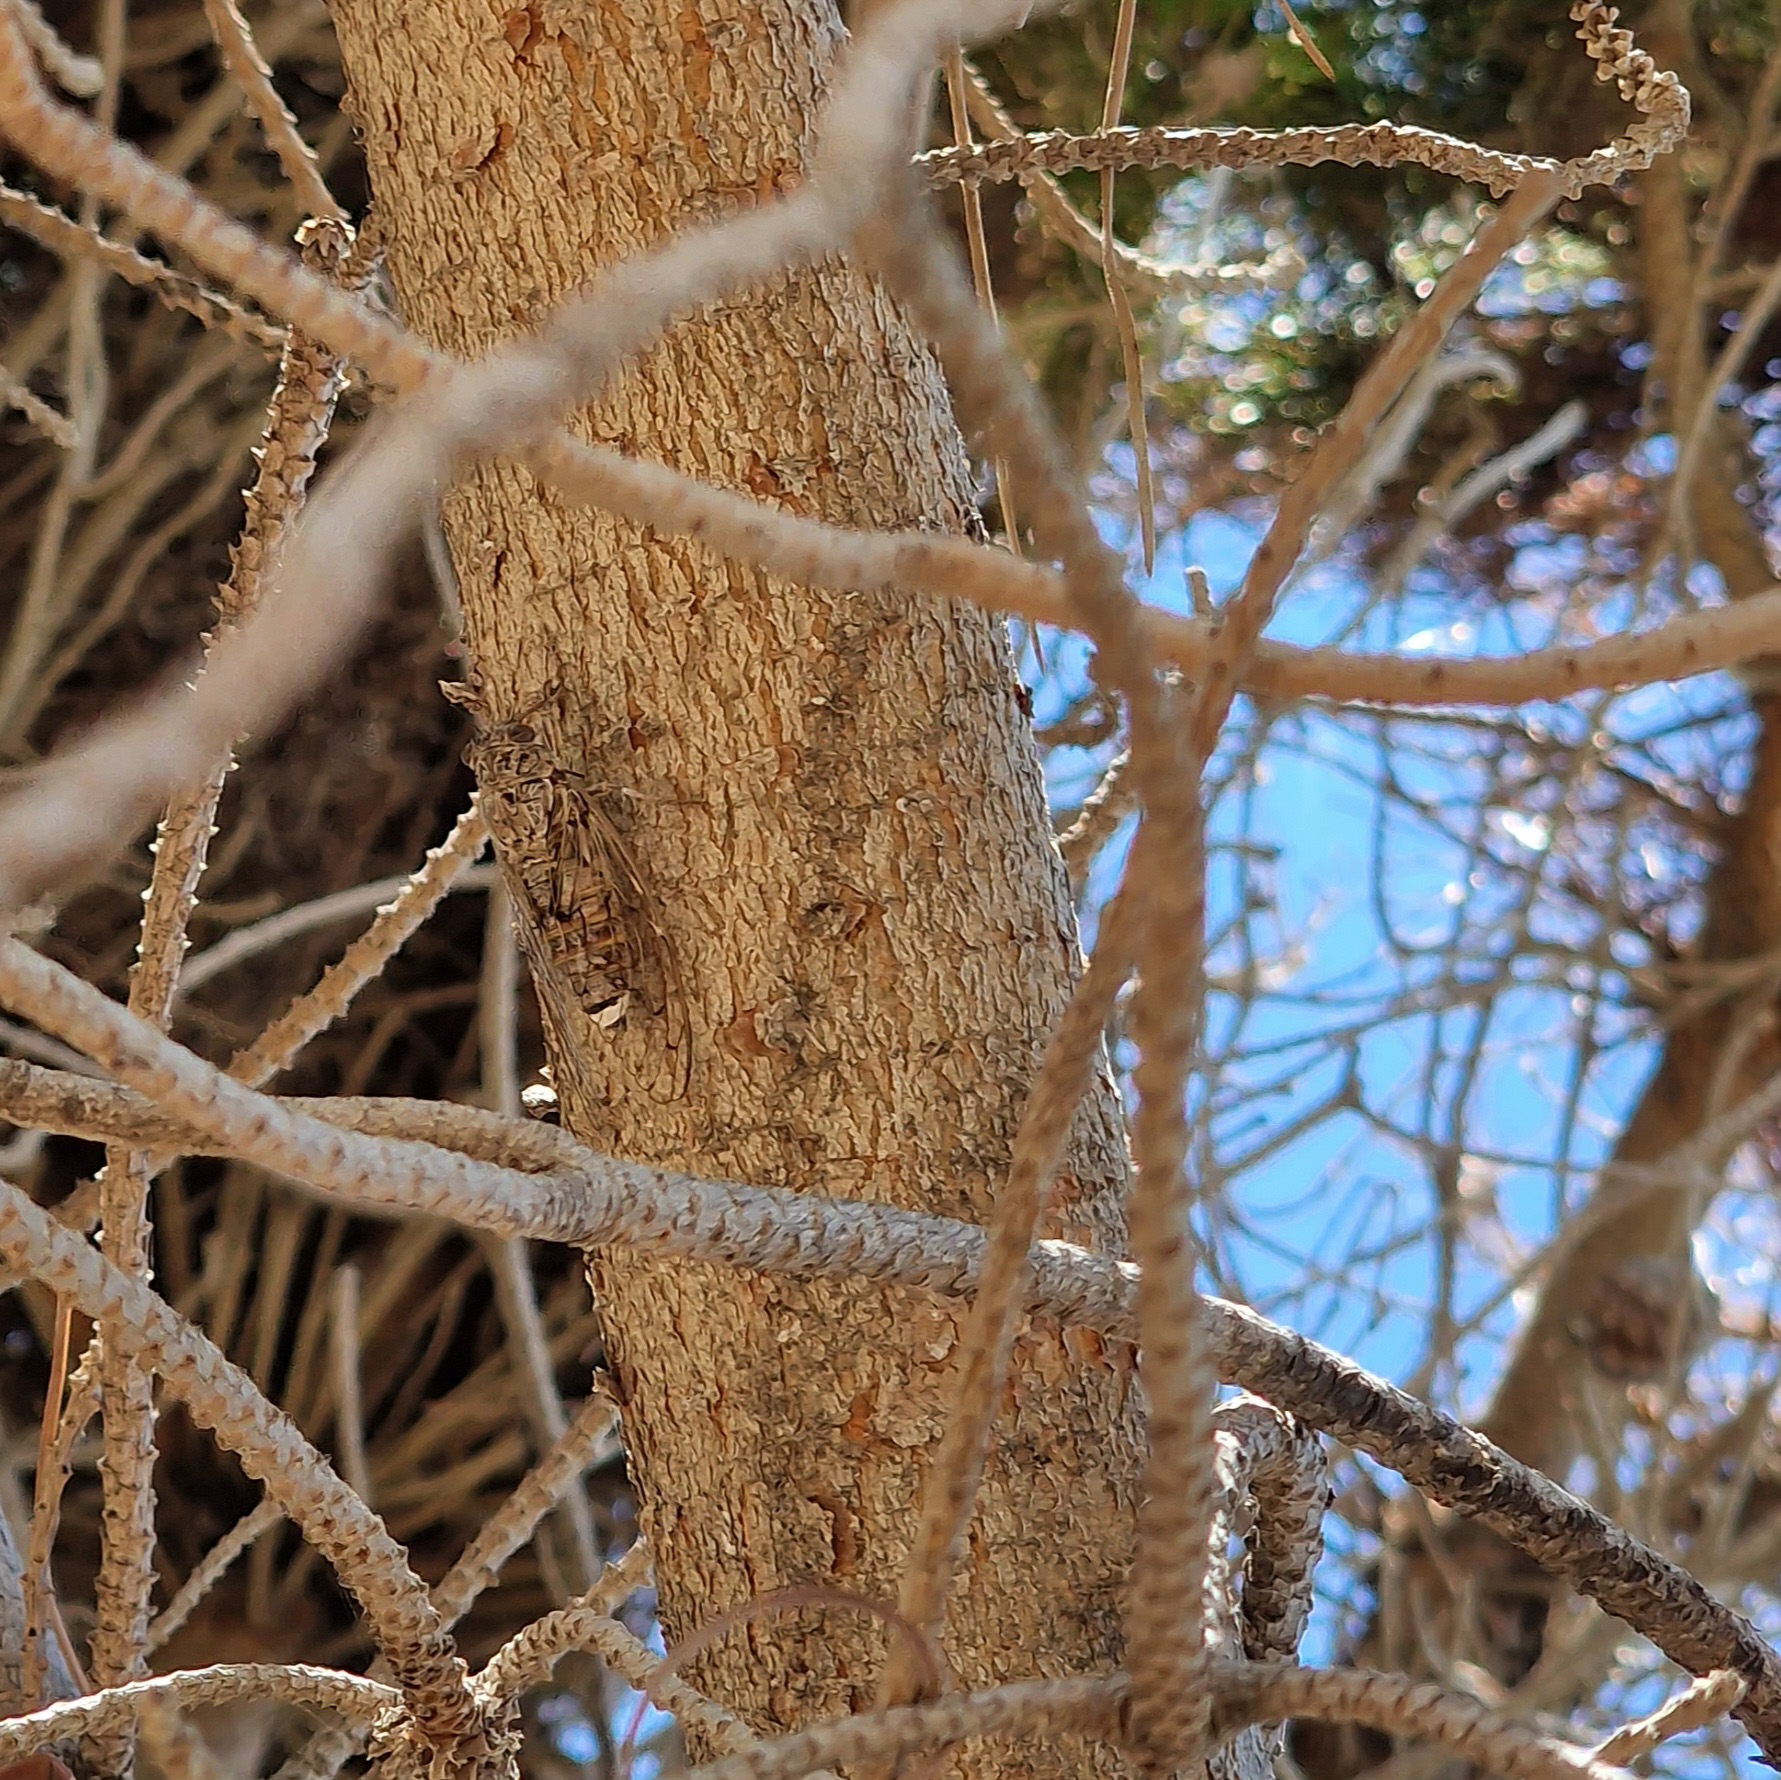 La cigale est à peine visible dans l'arbre